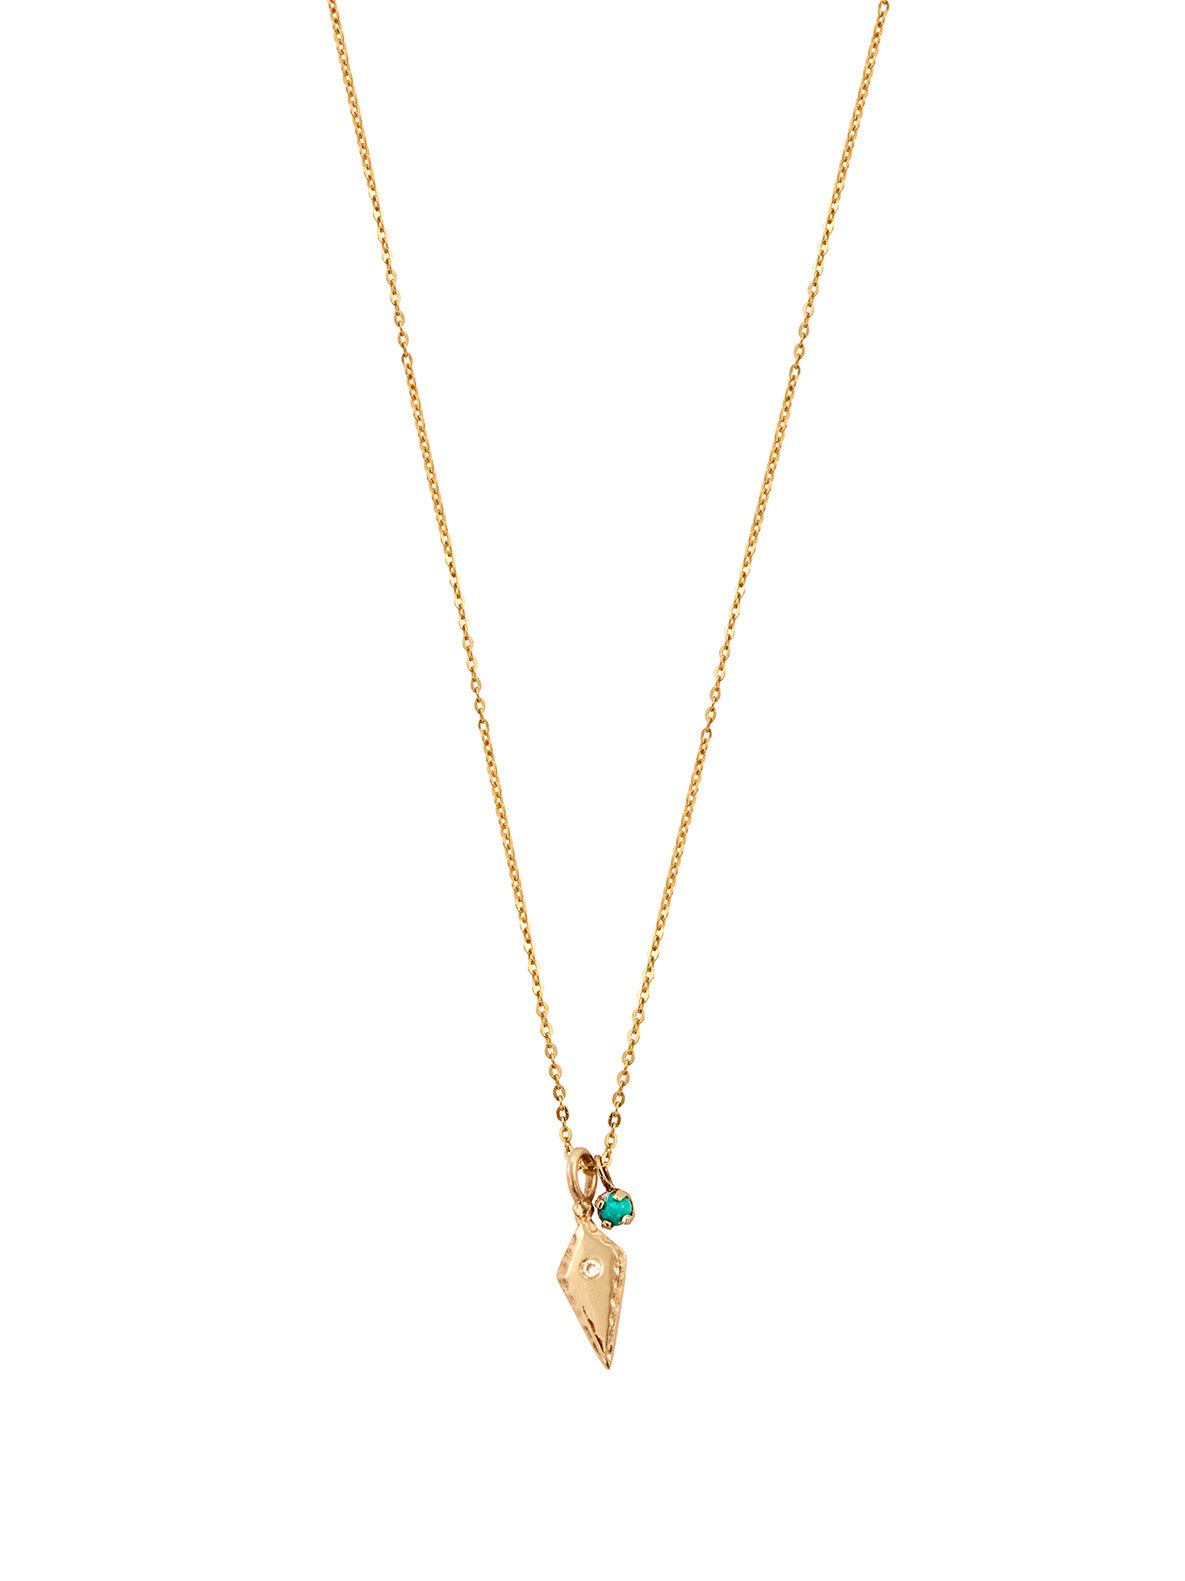 Diamond Arrowhead Lucky Charm Necklace - Archival Collection